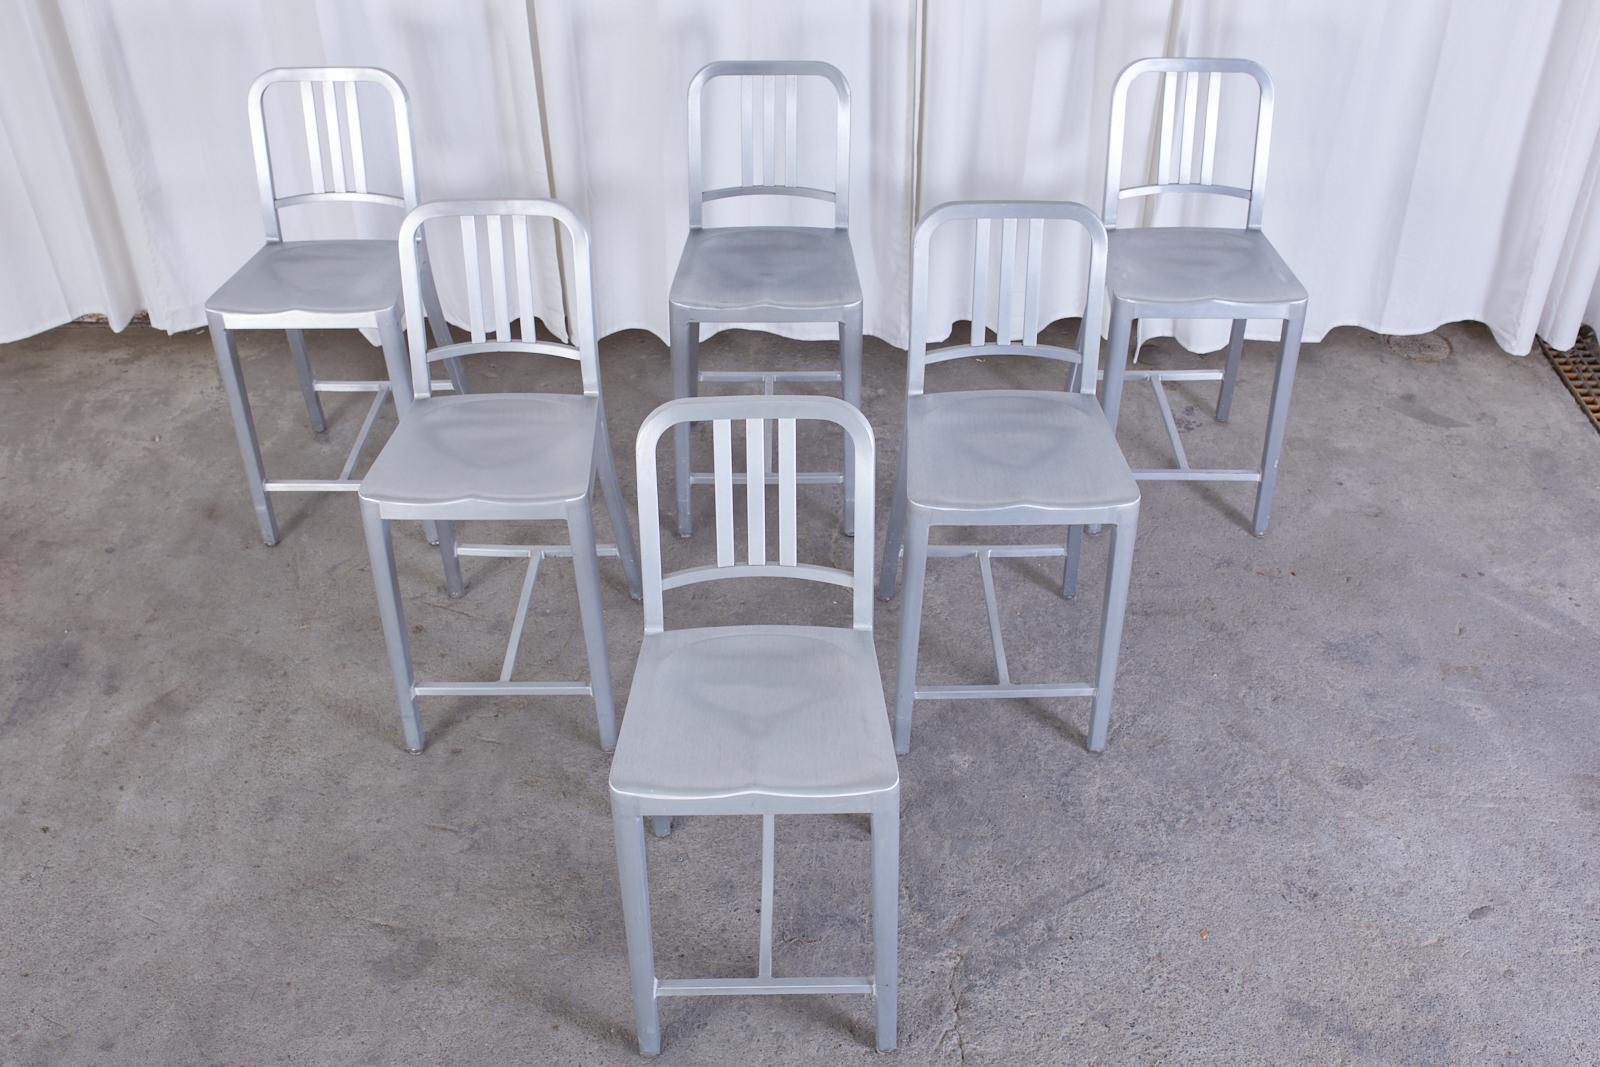 Ensemble américain iconique de six tabourets de comptoir de couleur marine en aluminium brossé fabriqué par Emeco. Conçu en 1944 et toujours en production aujourd'hui. La chaise marine est formée à la main à partir d'aluminium recyclé. Le siège est